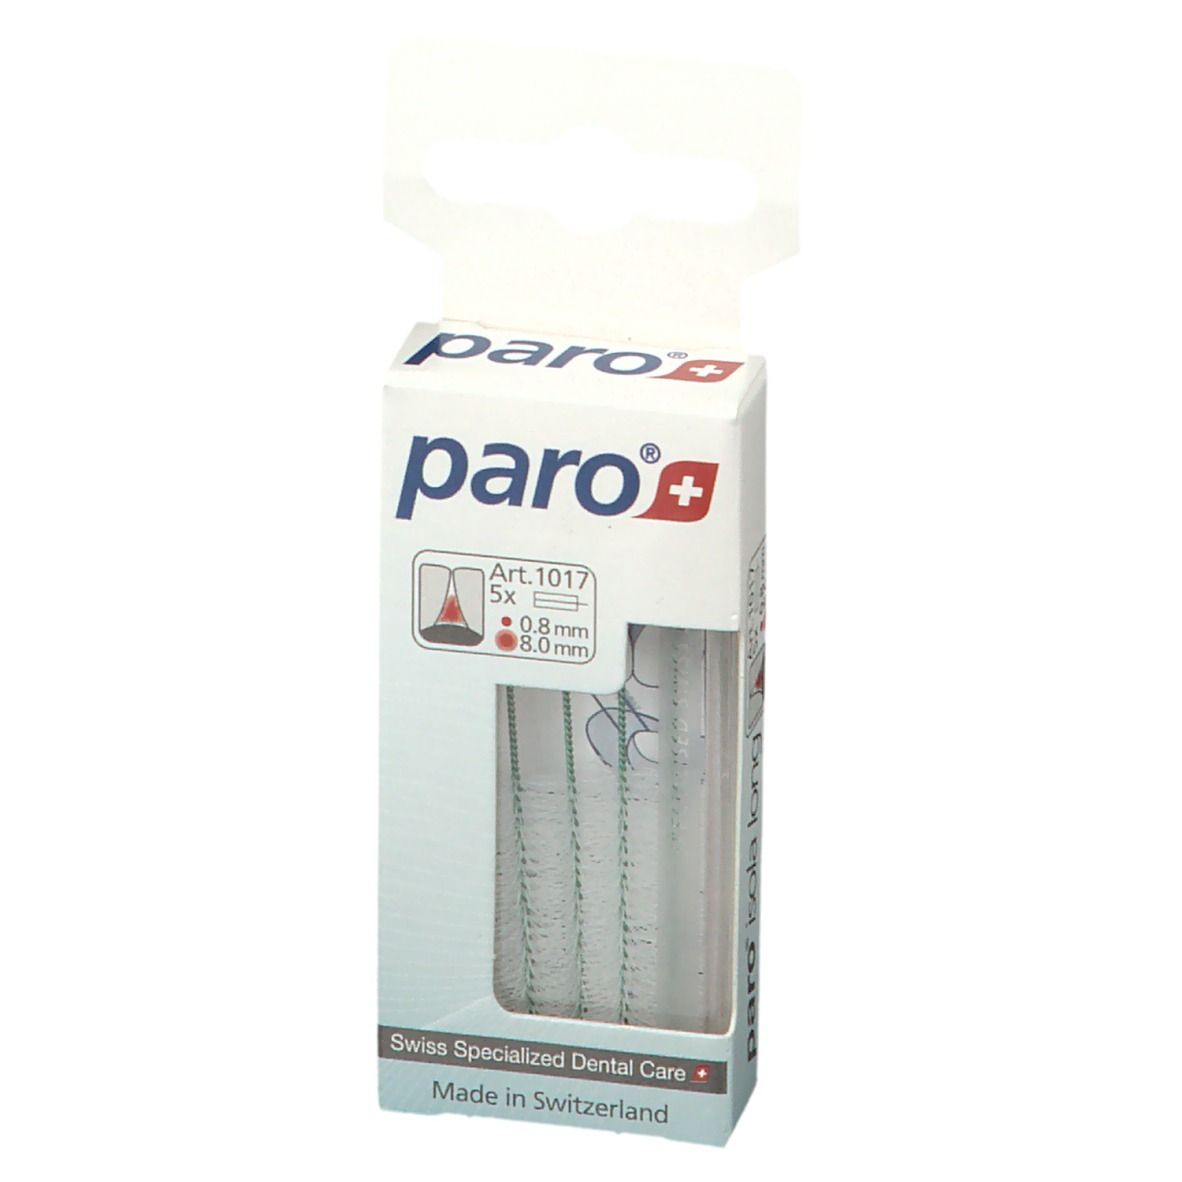 paro® ISOLA long 8 mm